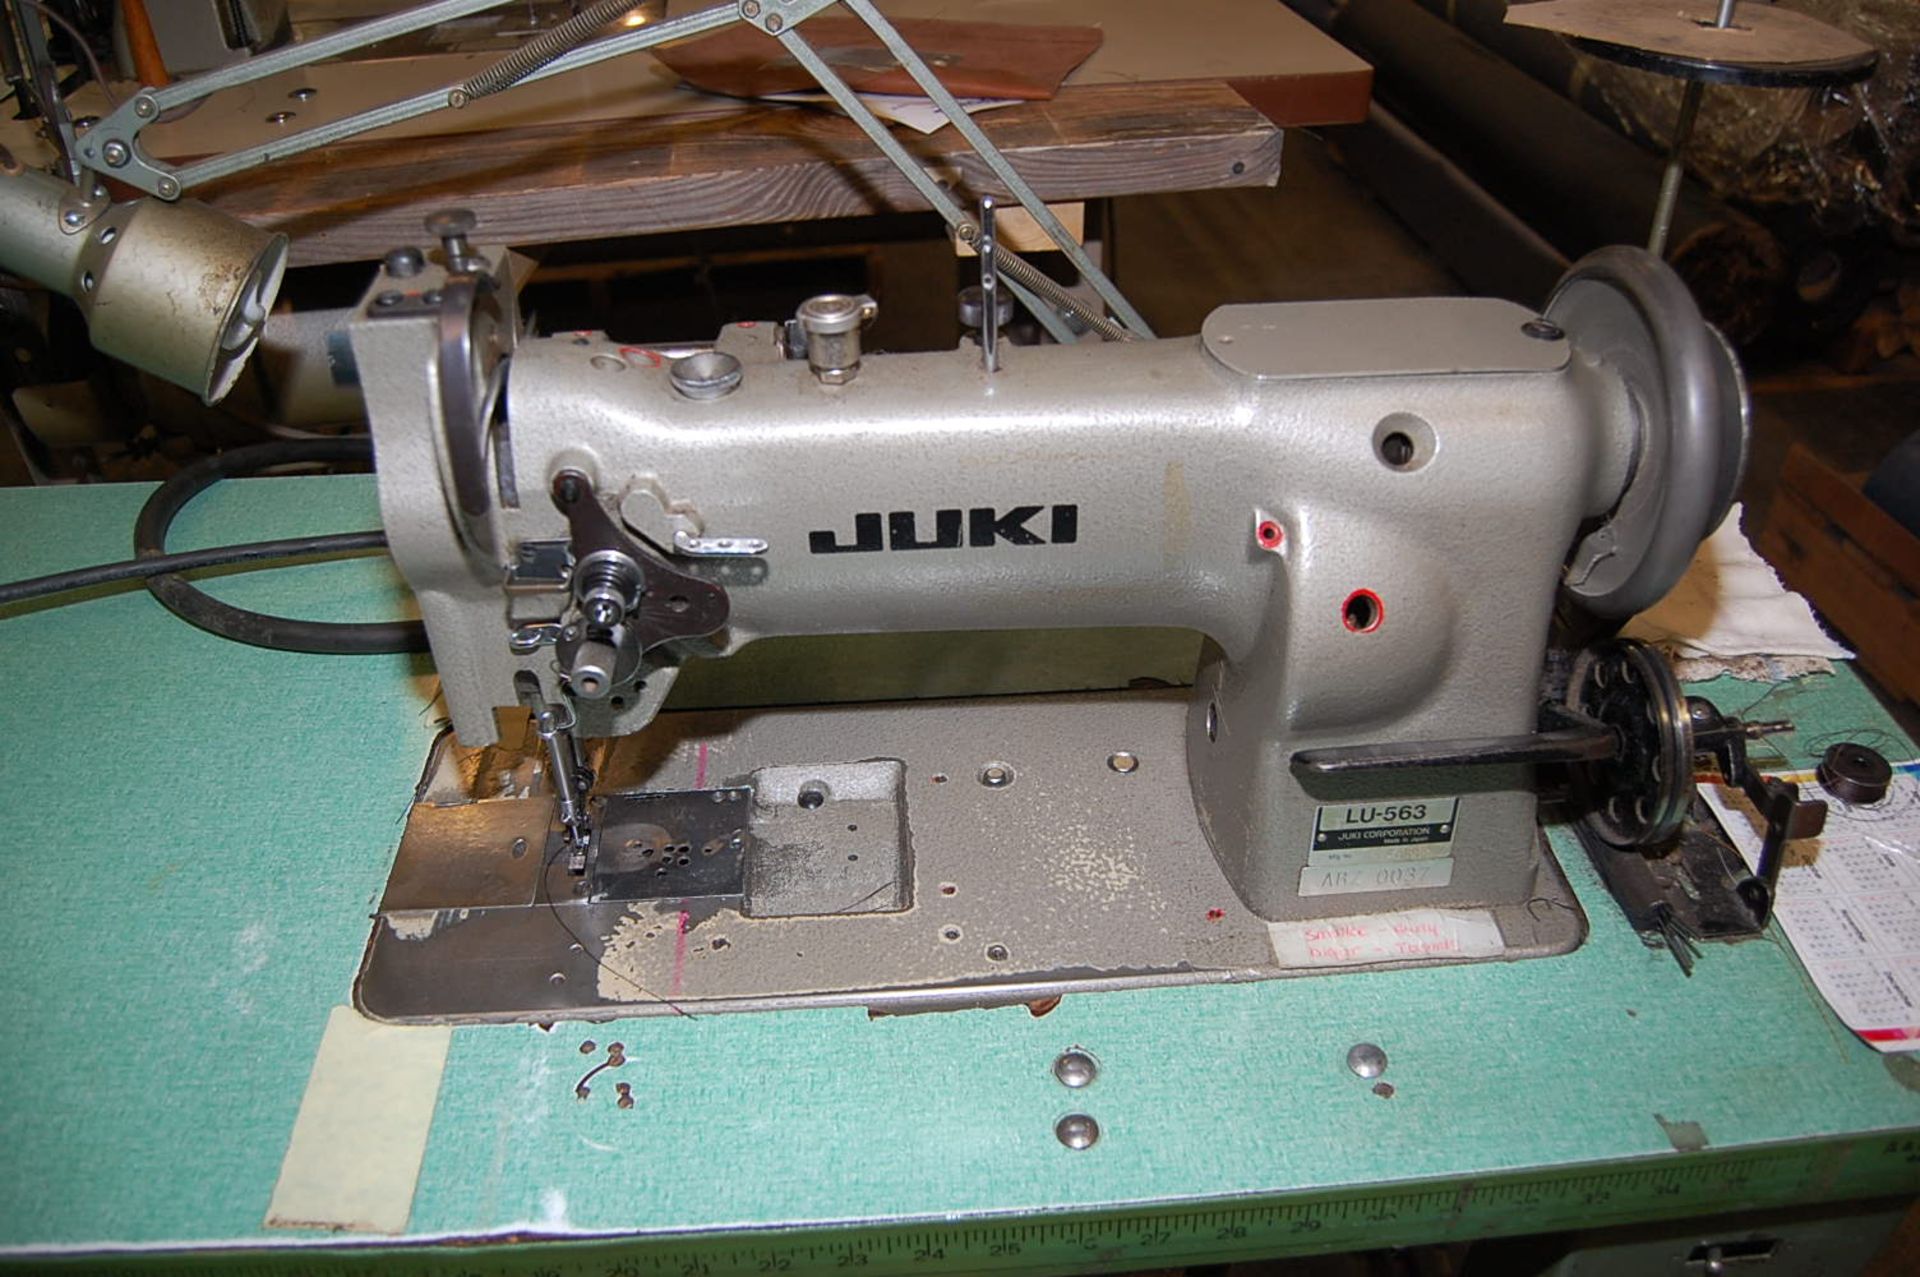 Juki Type #LU-563 Sewing Machine Mounted on Bench, SNS48899 - Image 2 of 2